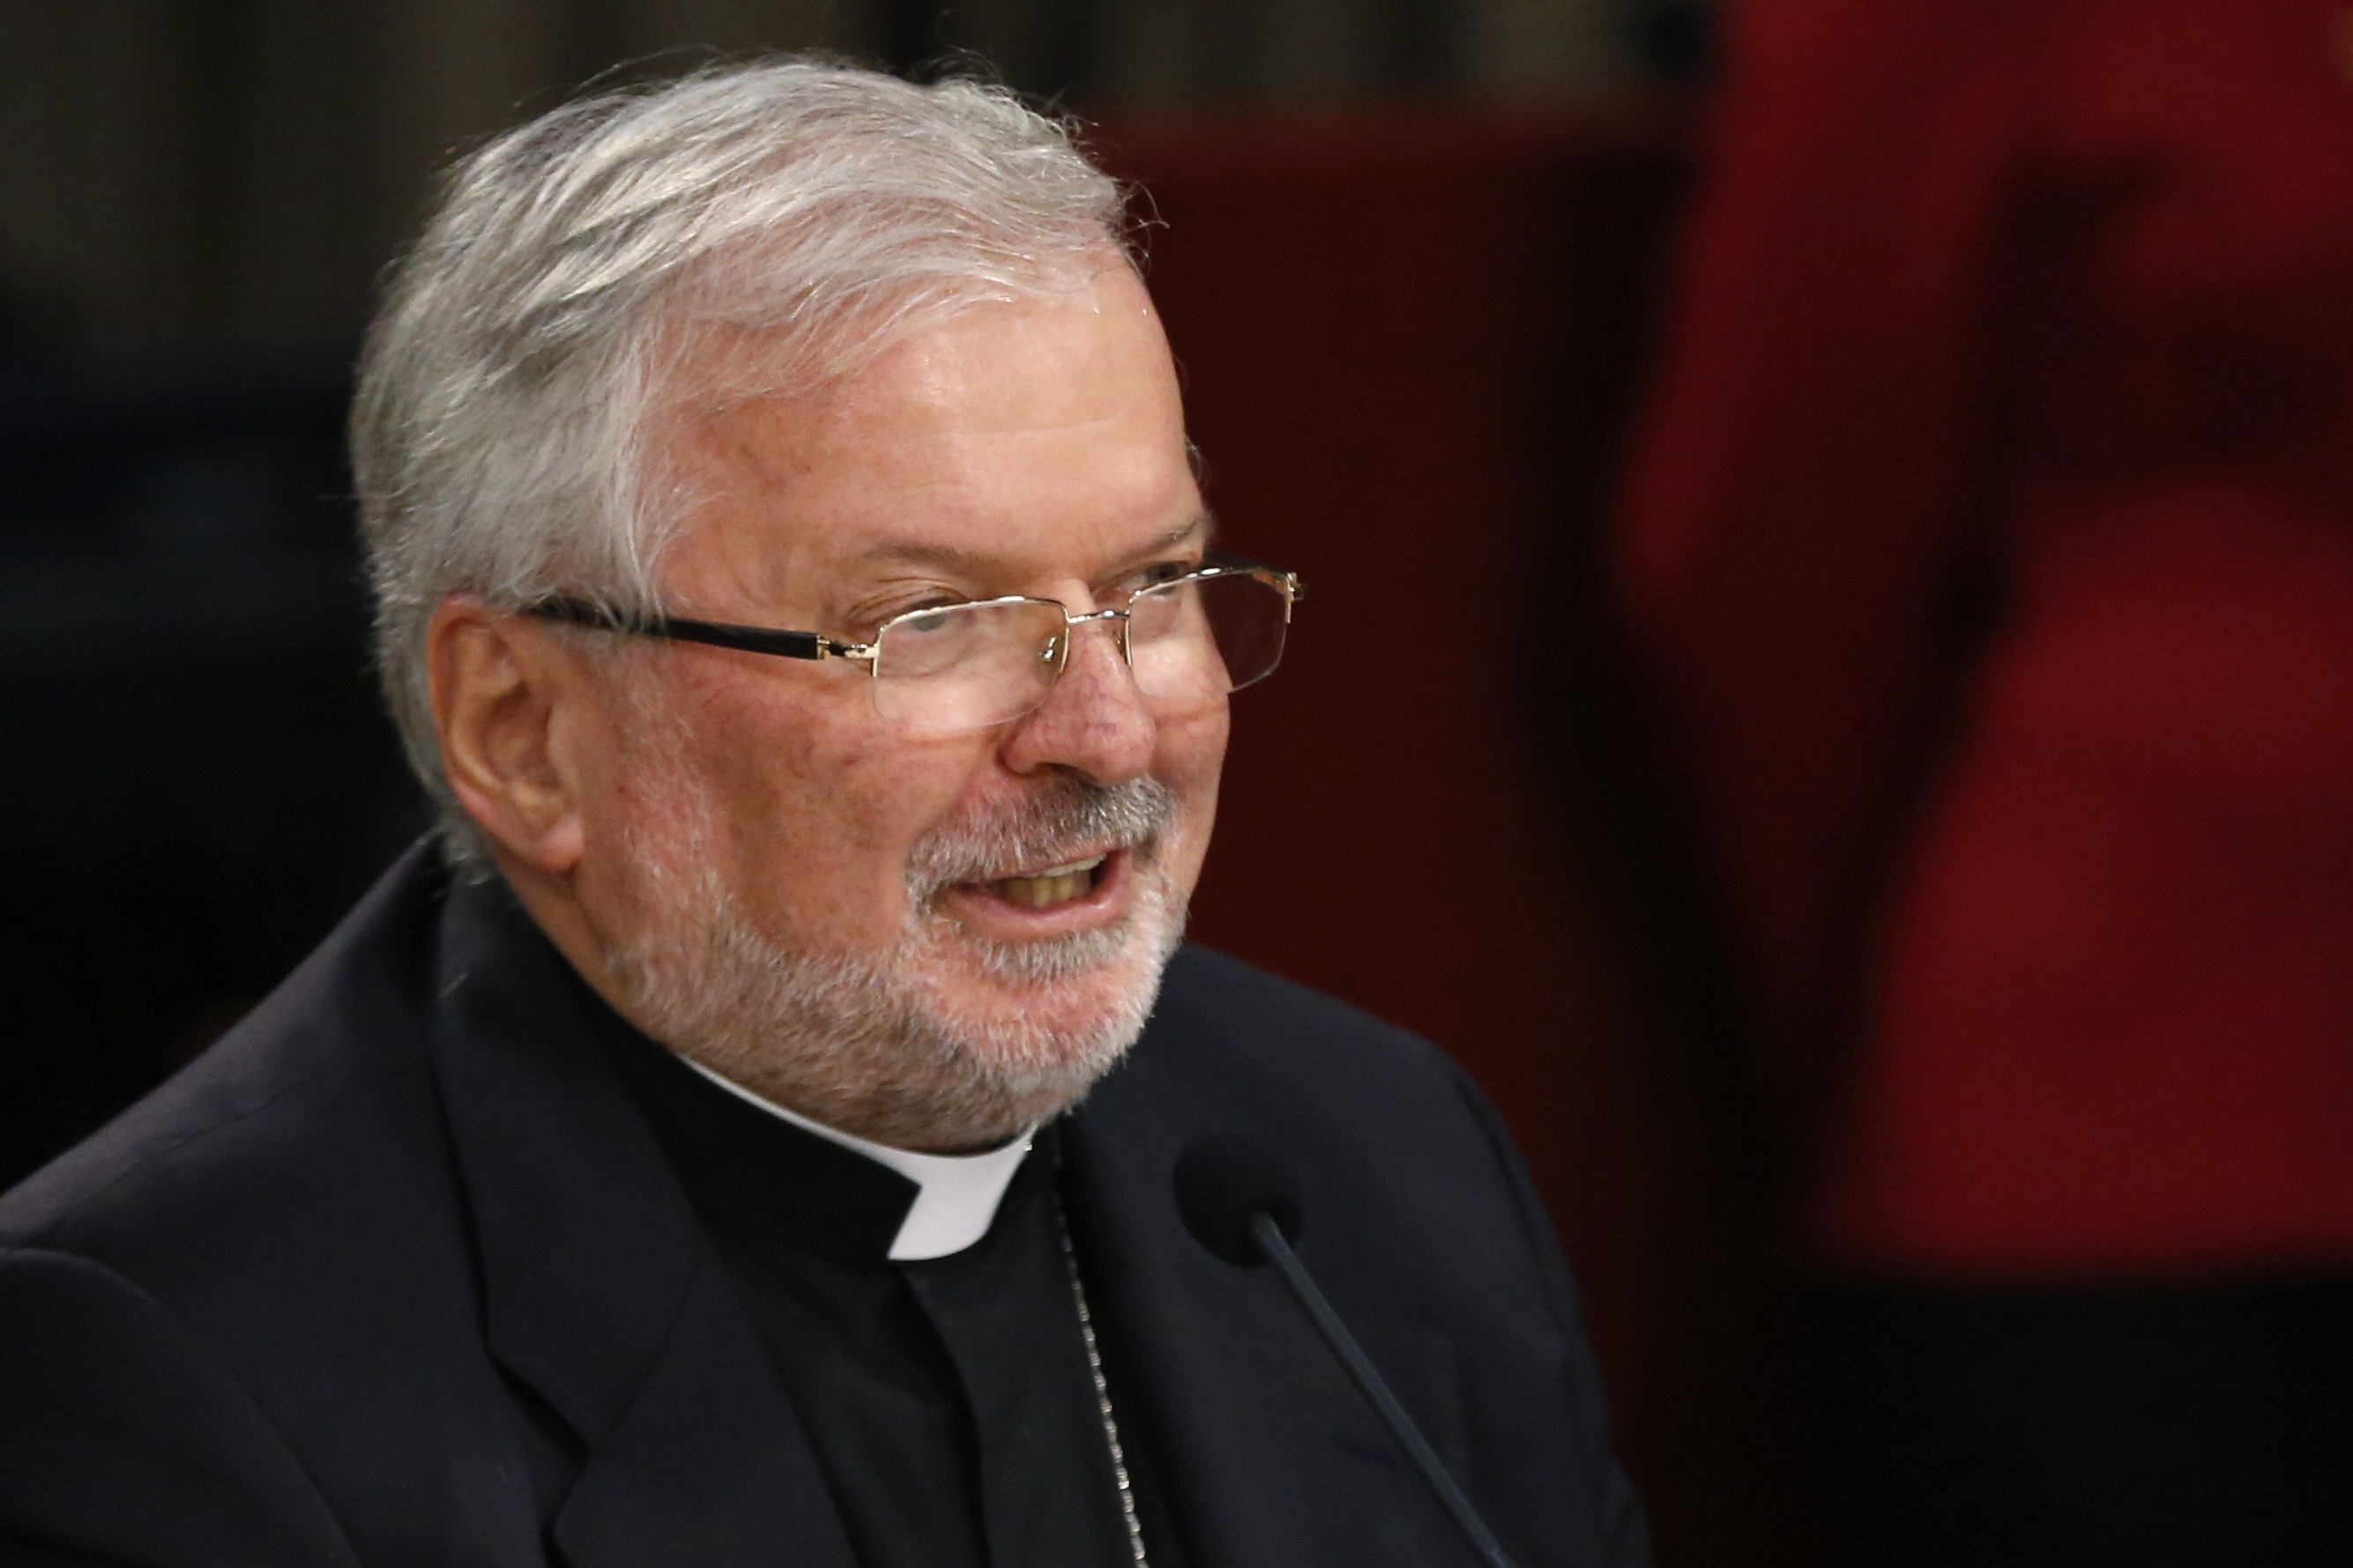 El Vaticano no ha recibido invitación formal para diálogo entre Gobierno y oposición